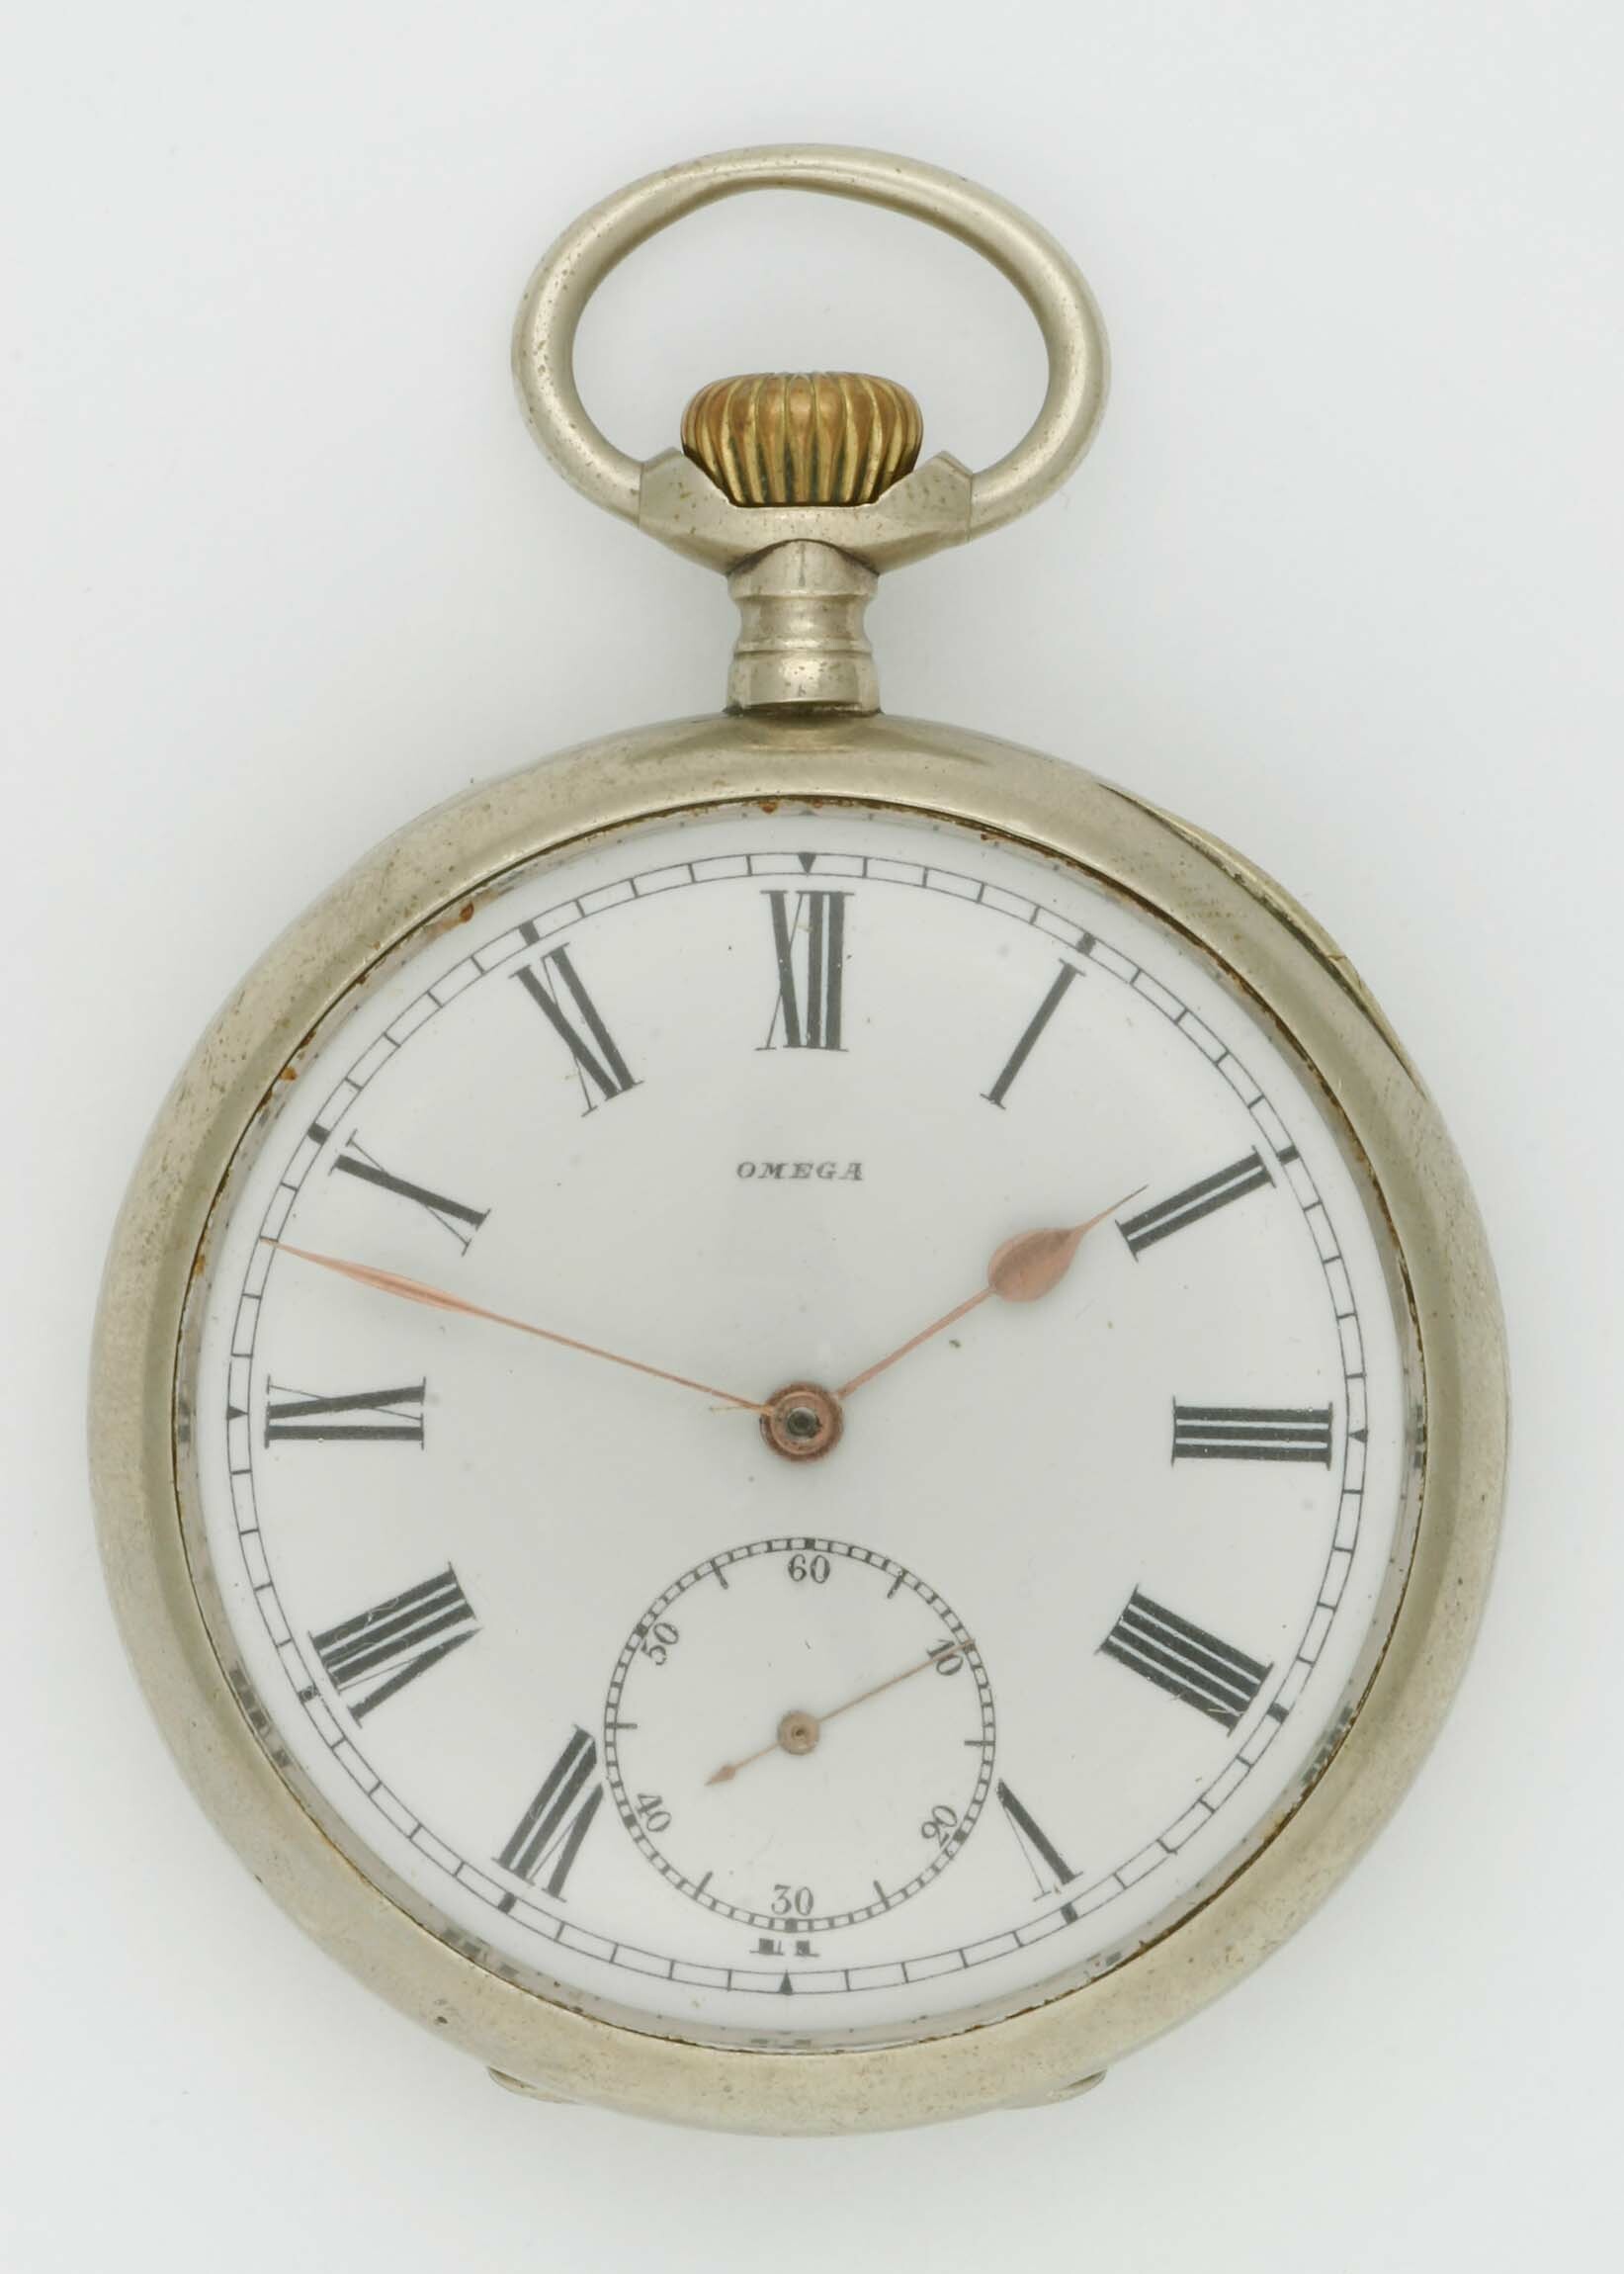 Taschenuhr Omega, Biel, um 1910 (Deutsches Uhrenmuseum CC BY-SA)